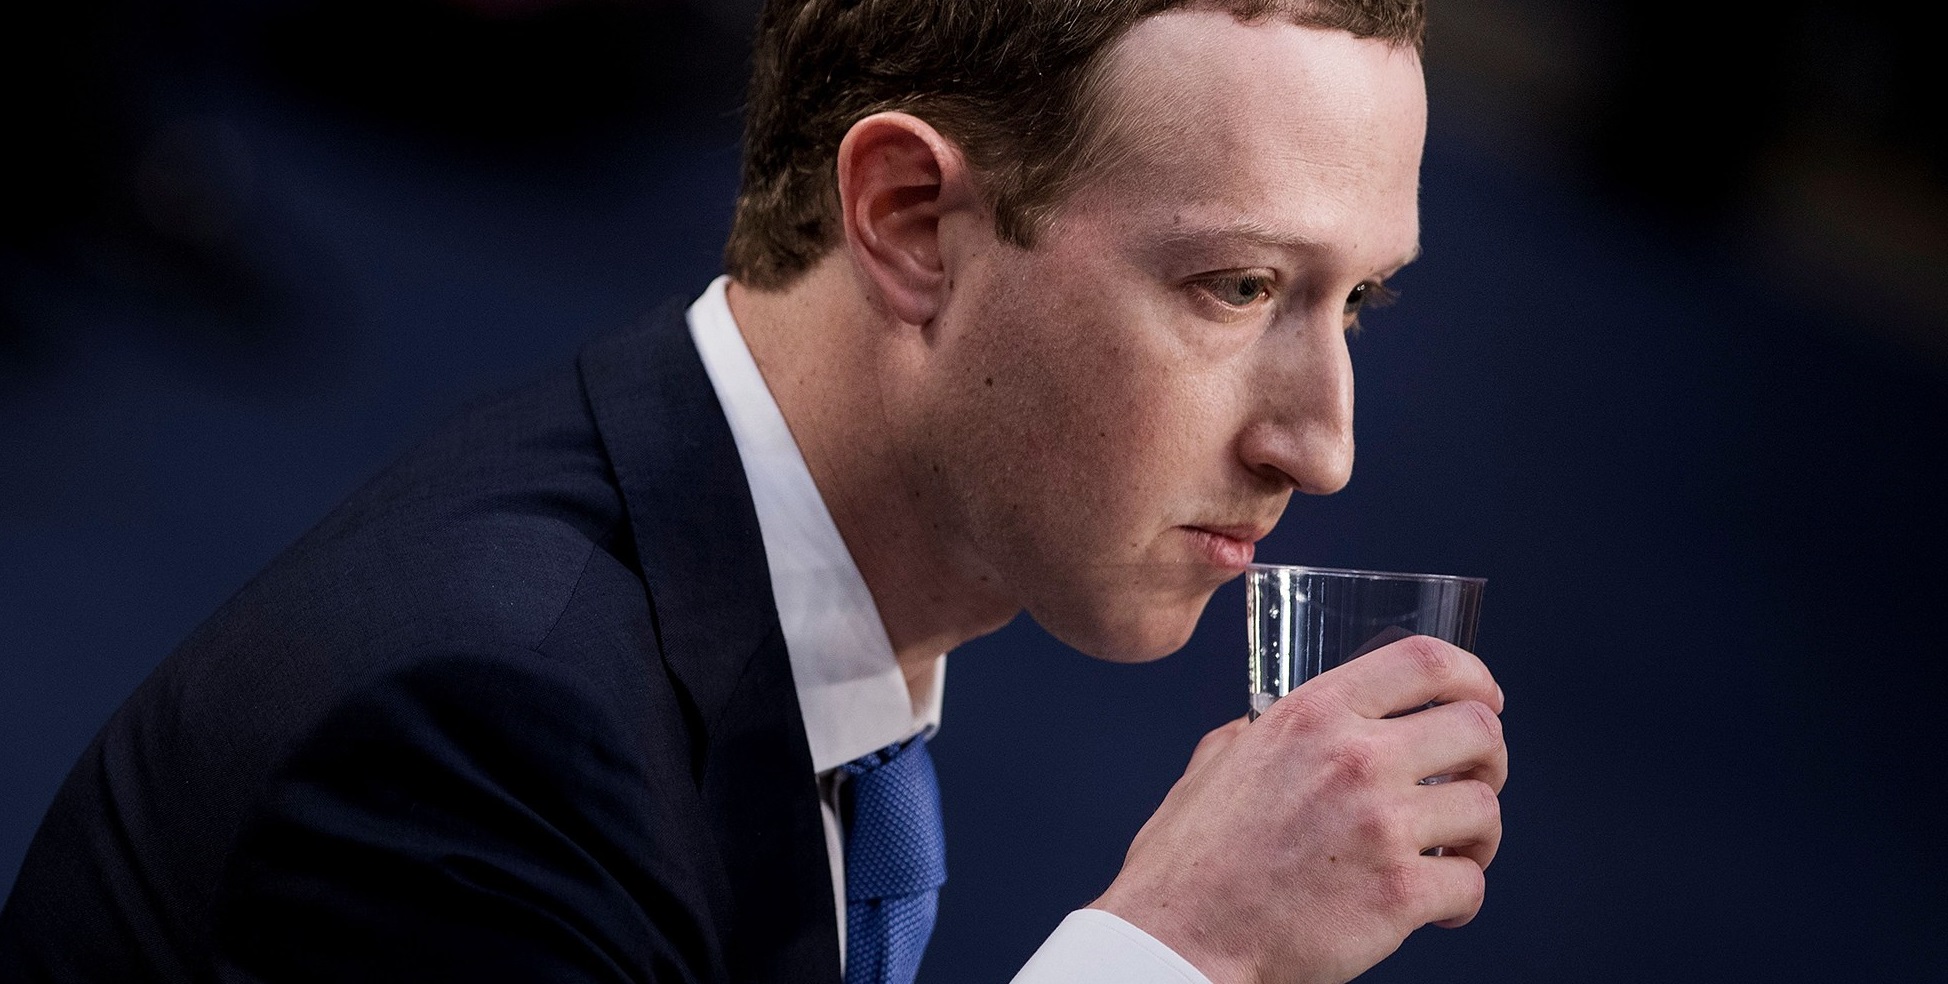 Цукерберг опустился в рейтинге миллиардеров из-за падения акций Facebook